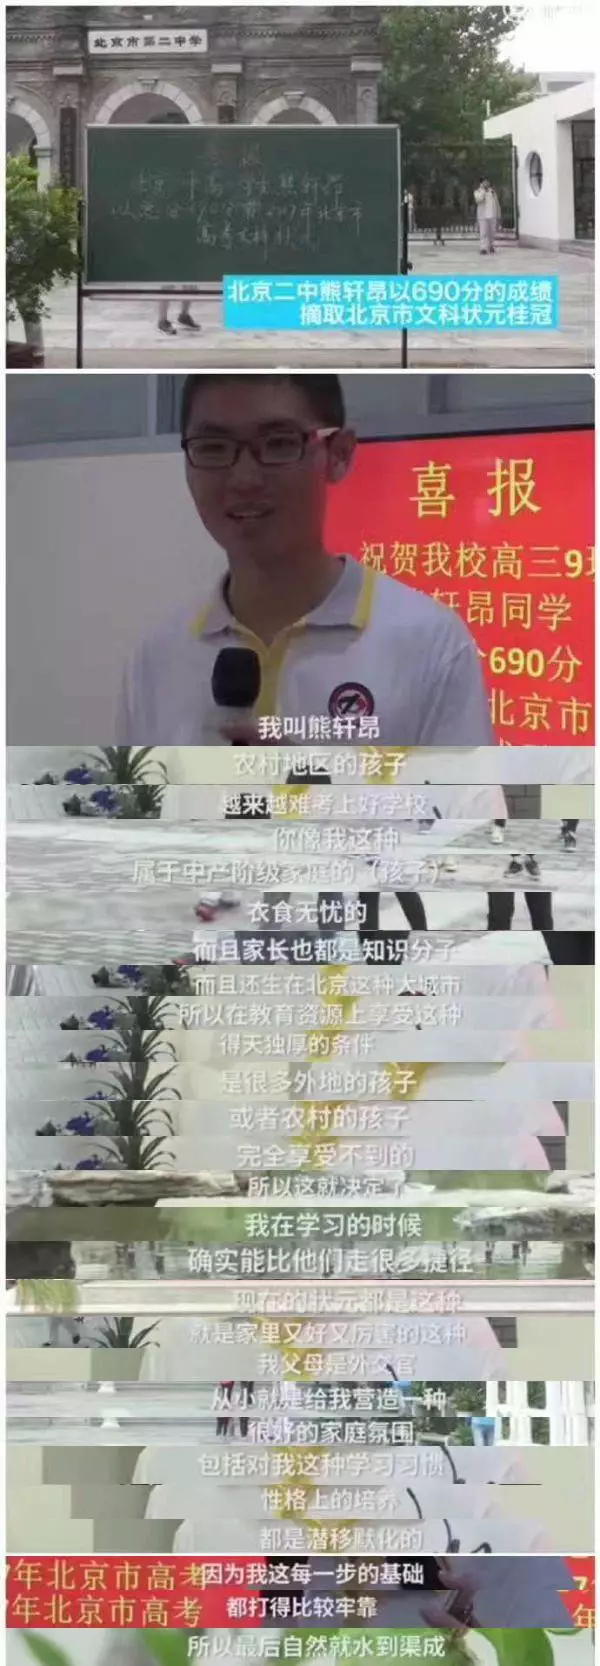 今年高考结束,北京文科状元熊轩昂的一段采访视频《2017北京高考文科